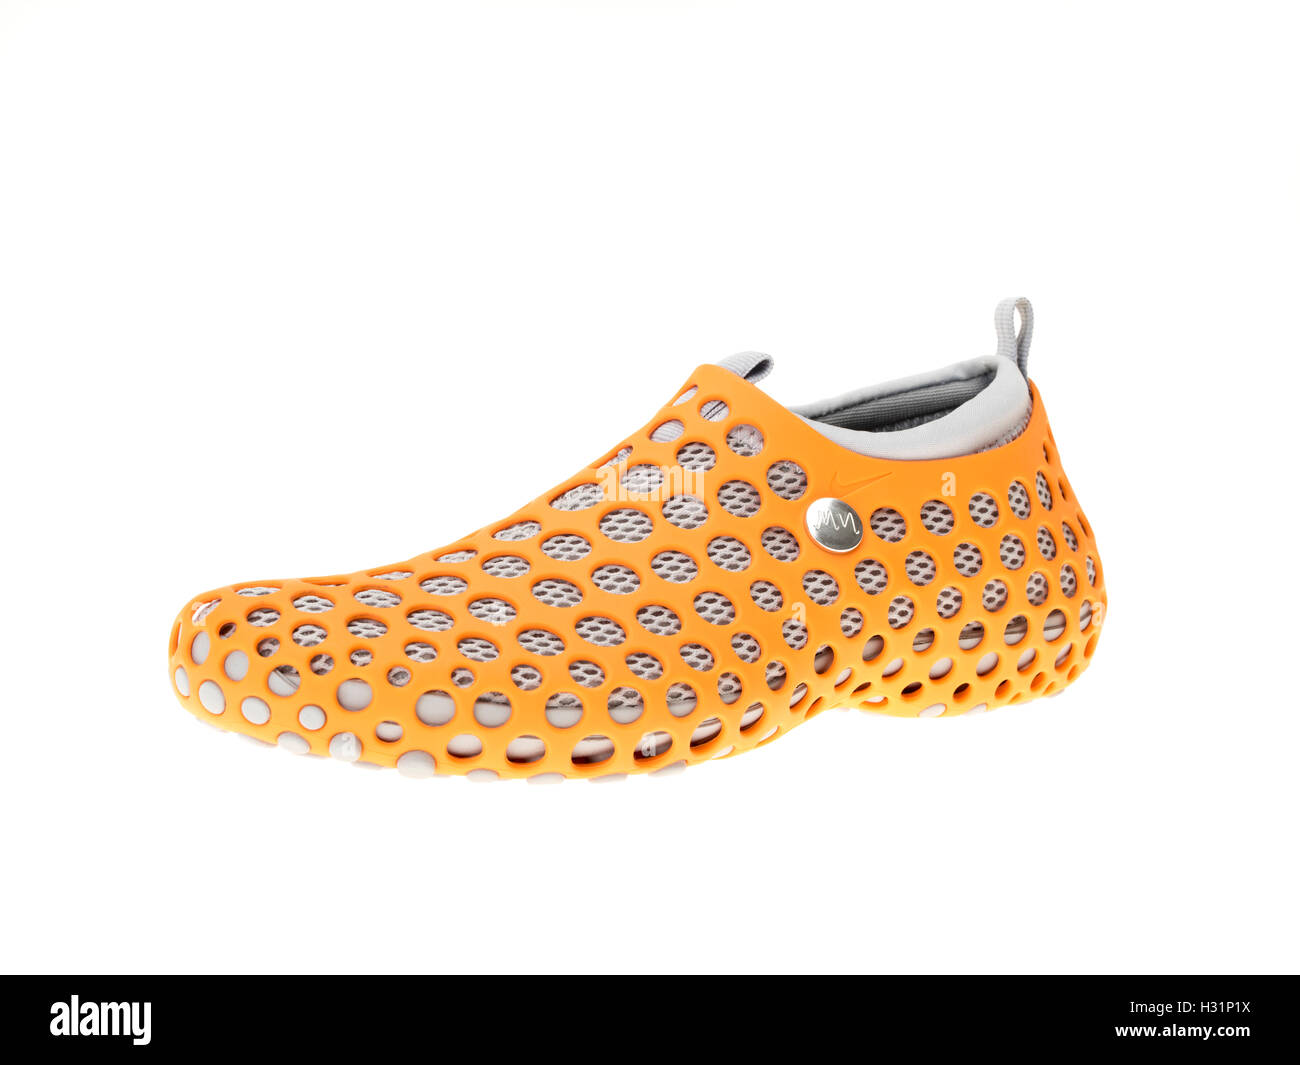 Chaussures de sport Nike ZVEZDOCHKA par le designer industriel Marc Newson Banque D'Images